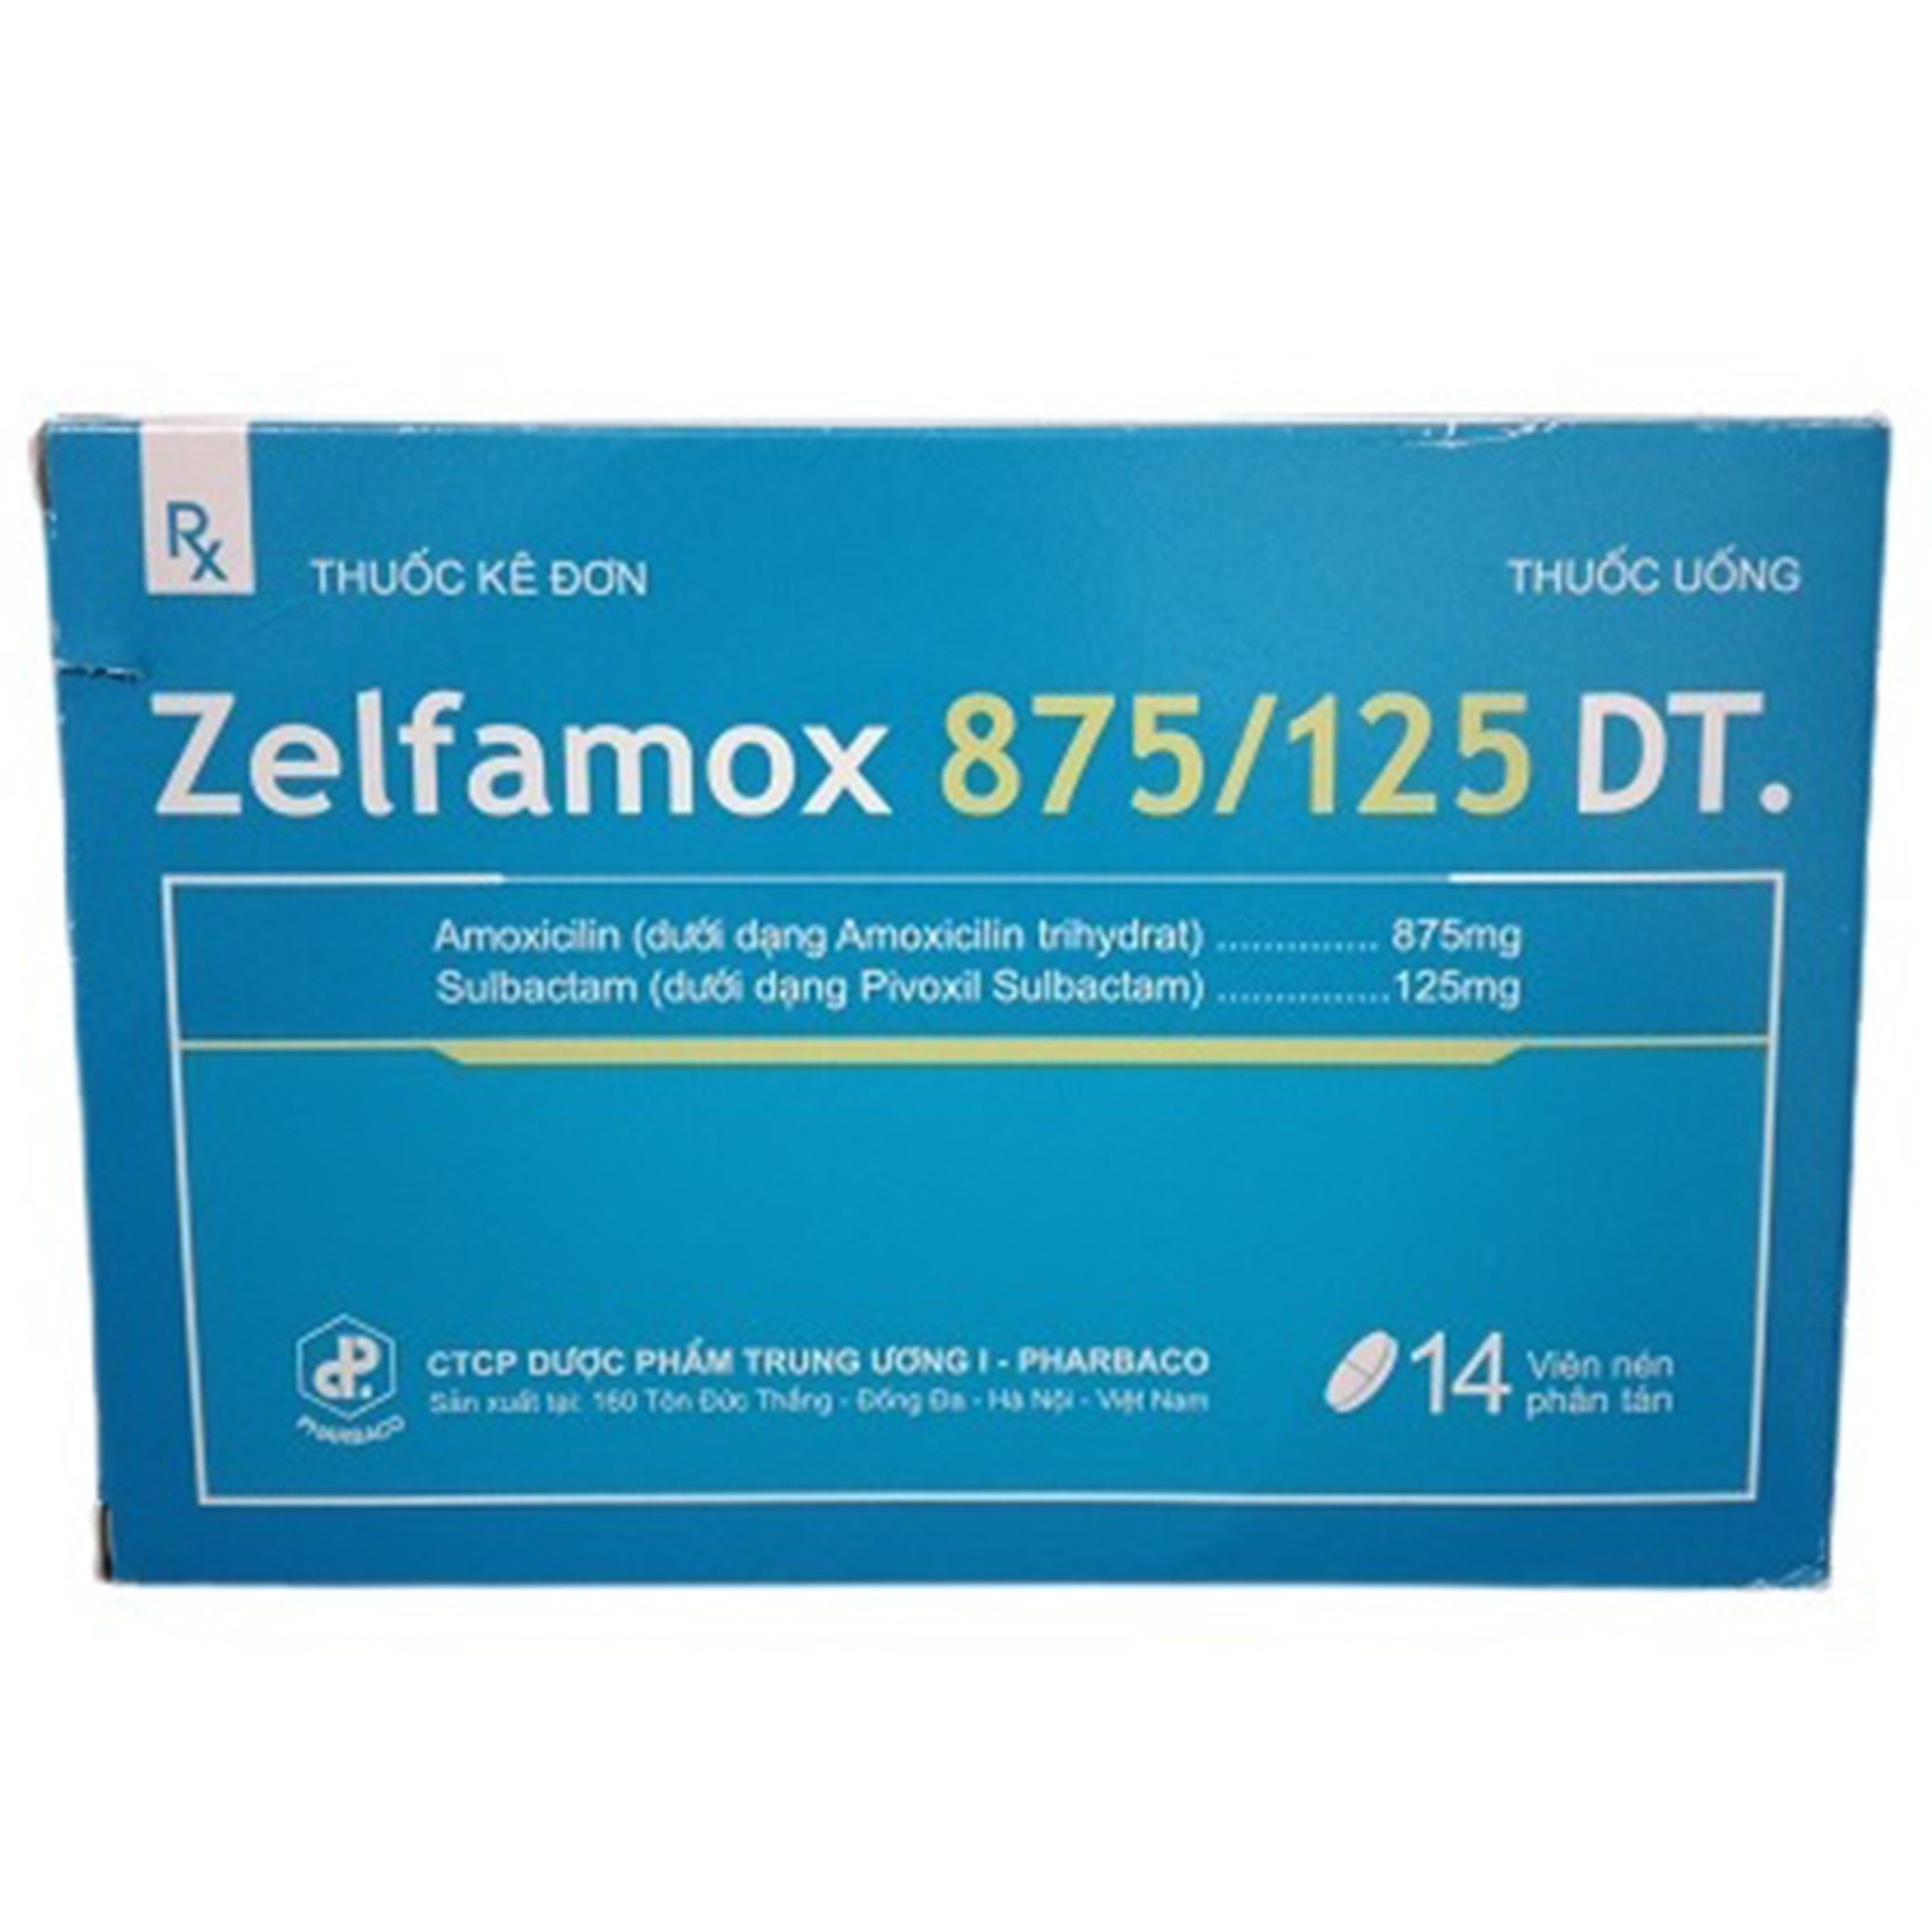 Thuốc Zelfamox 875/125 DT điều trị viêm tai giữa, viêm họng (14 viên)